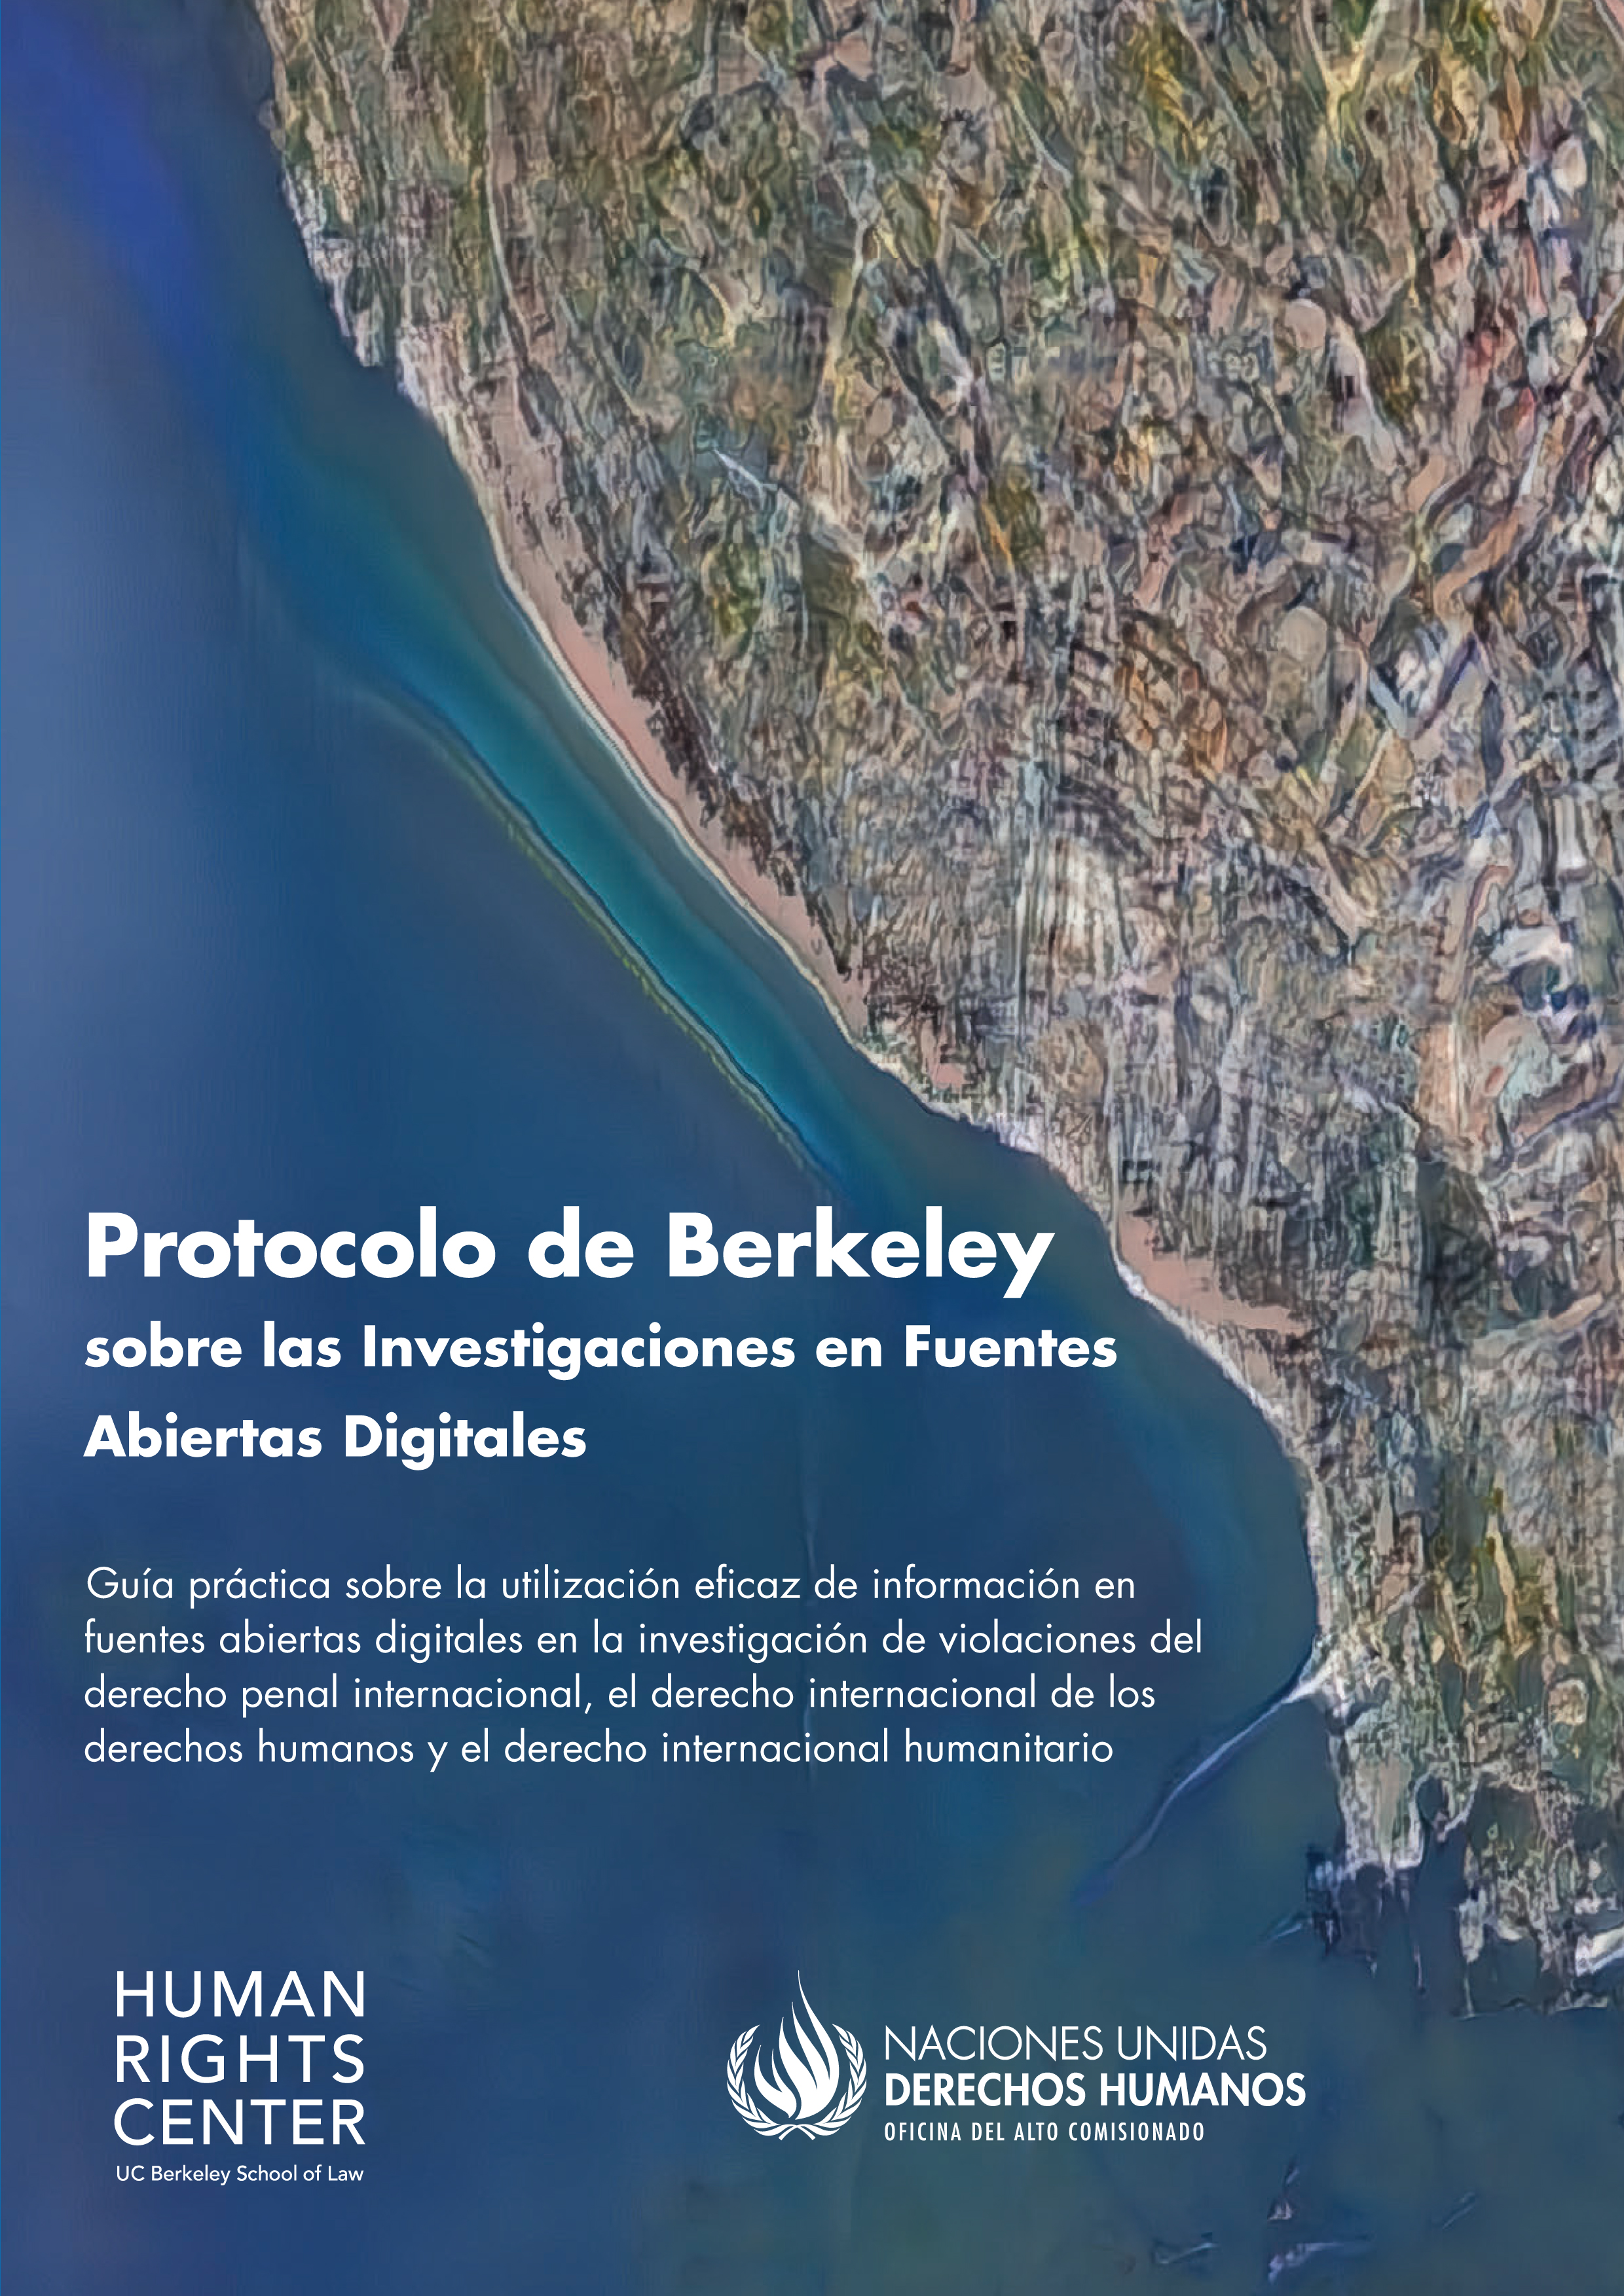 image of Protocolo de Berkeley sobre las Investigaciones en Fuentes Abiertas Digitales